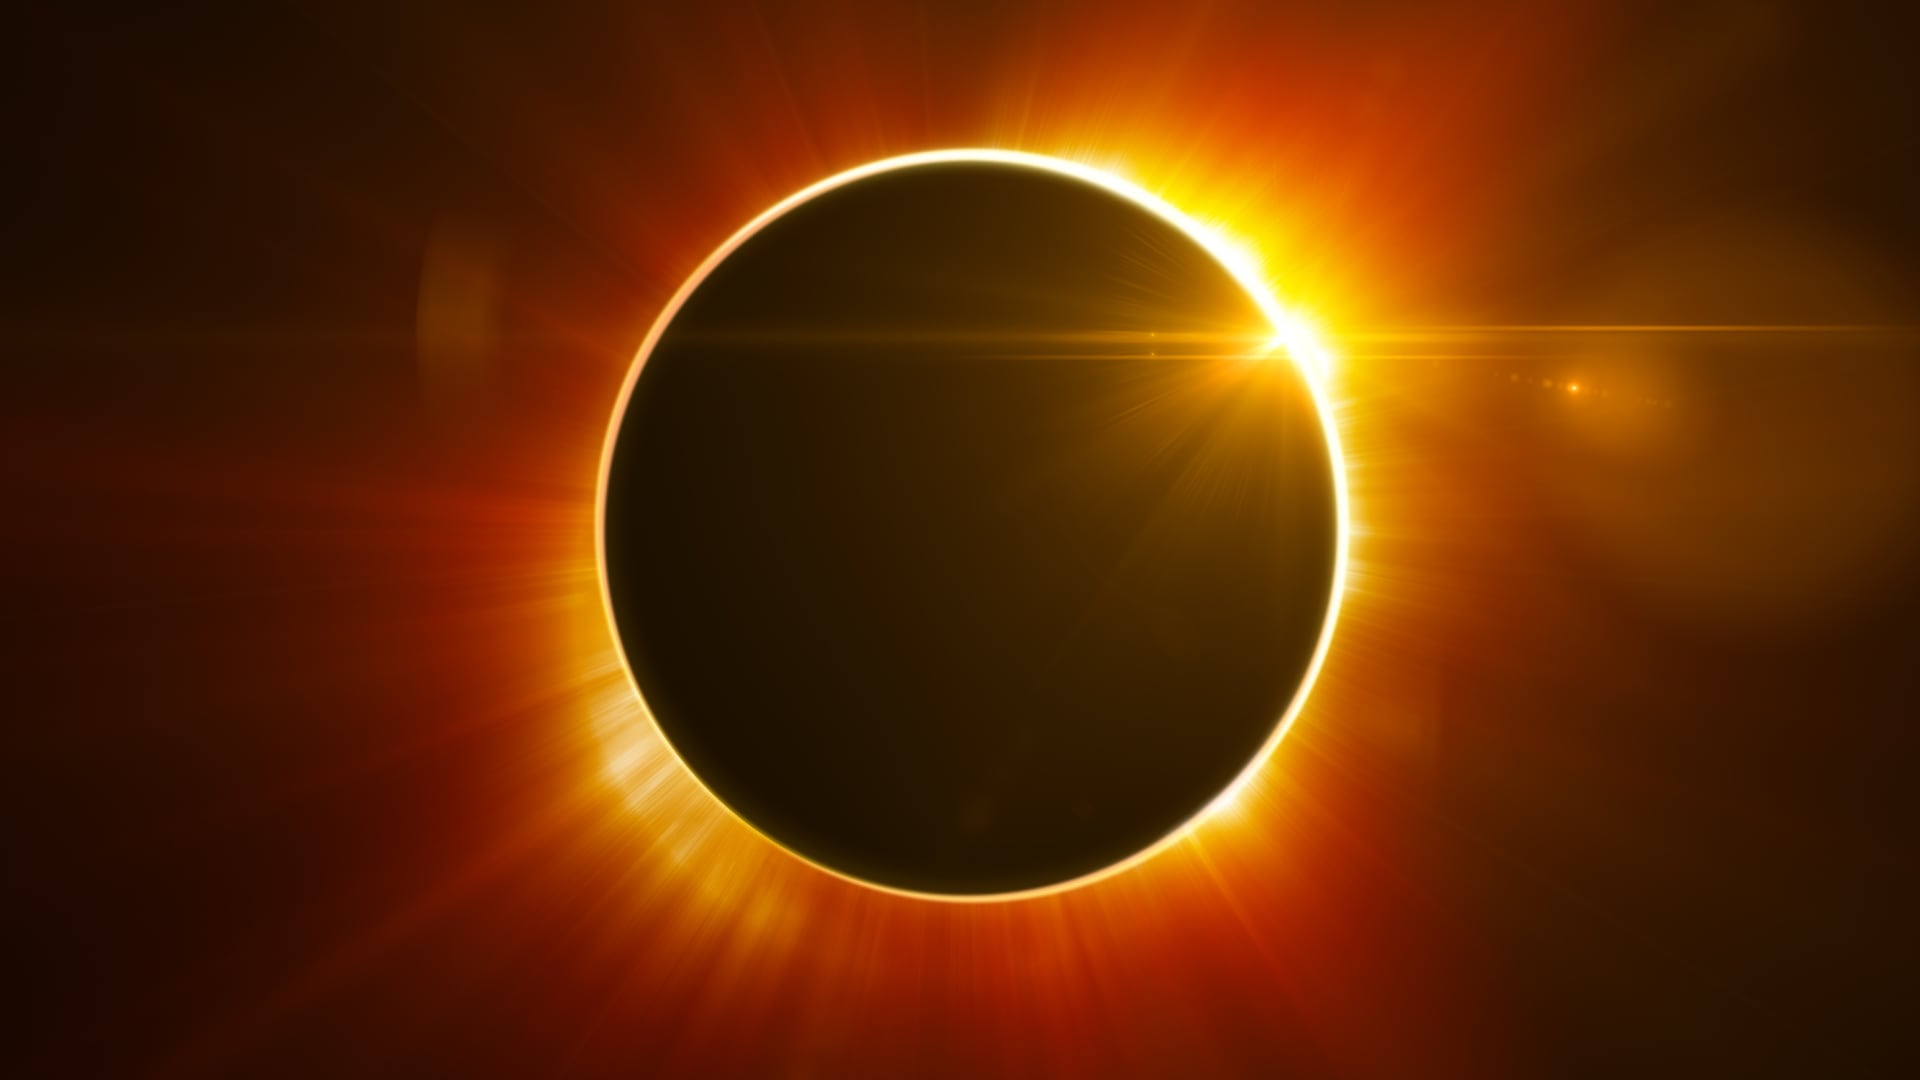 El eclipse podrá ser visto desde internet
Créditos: Canva.